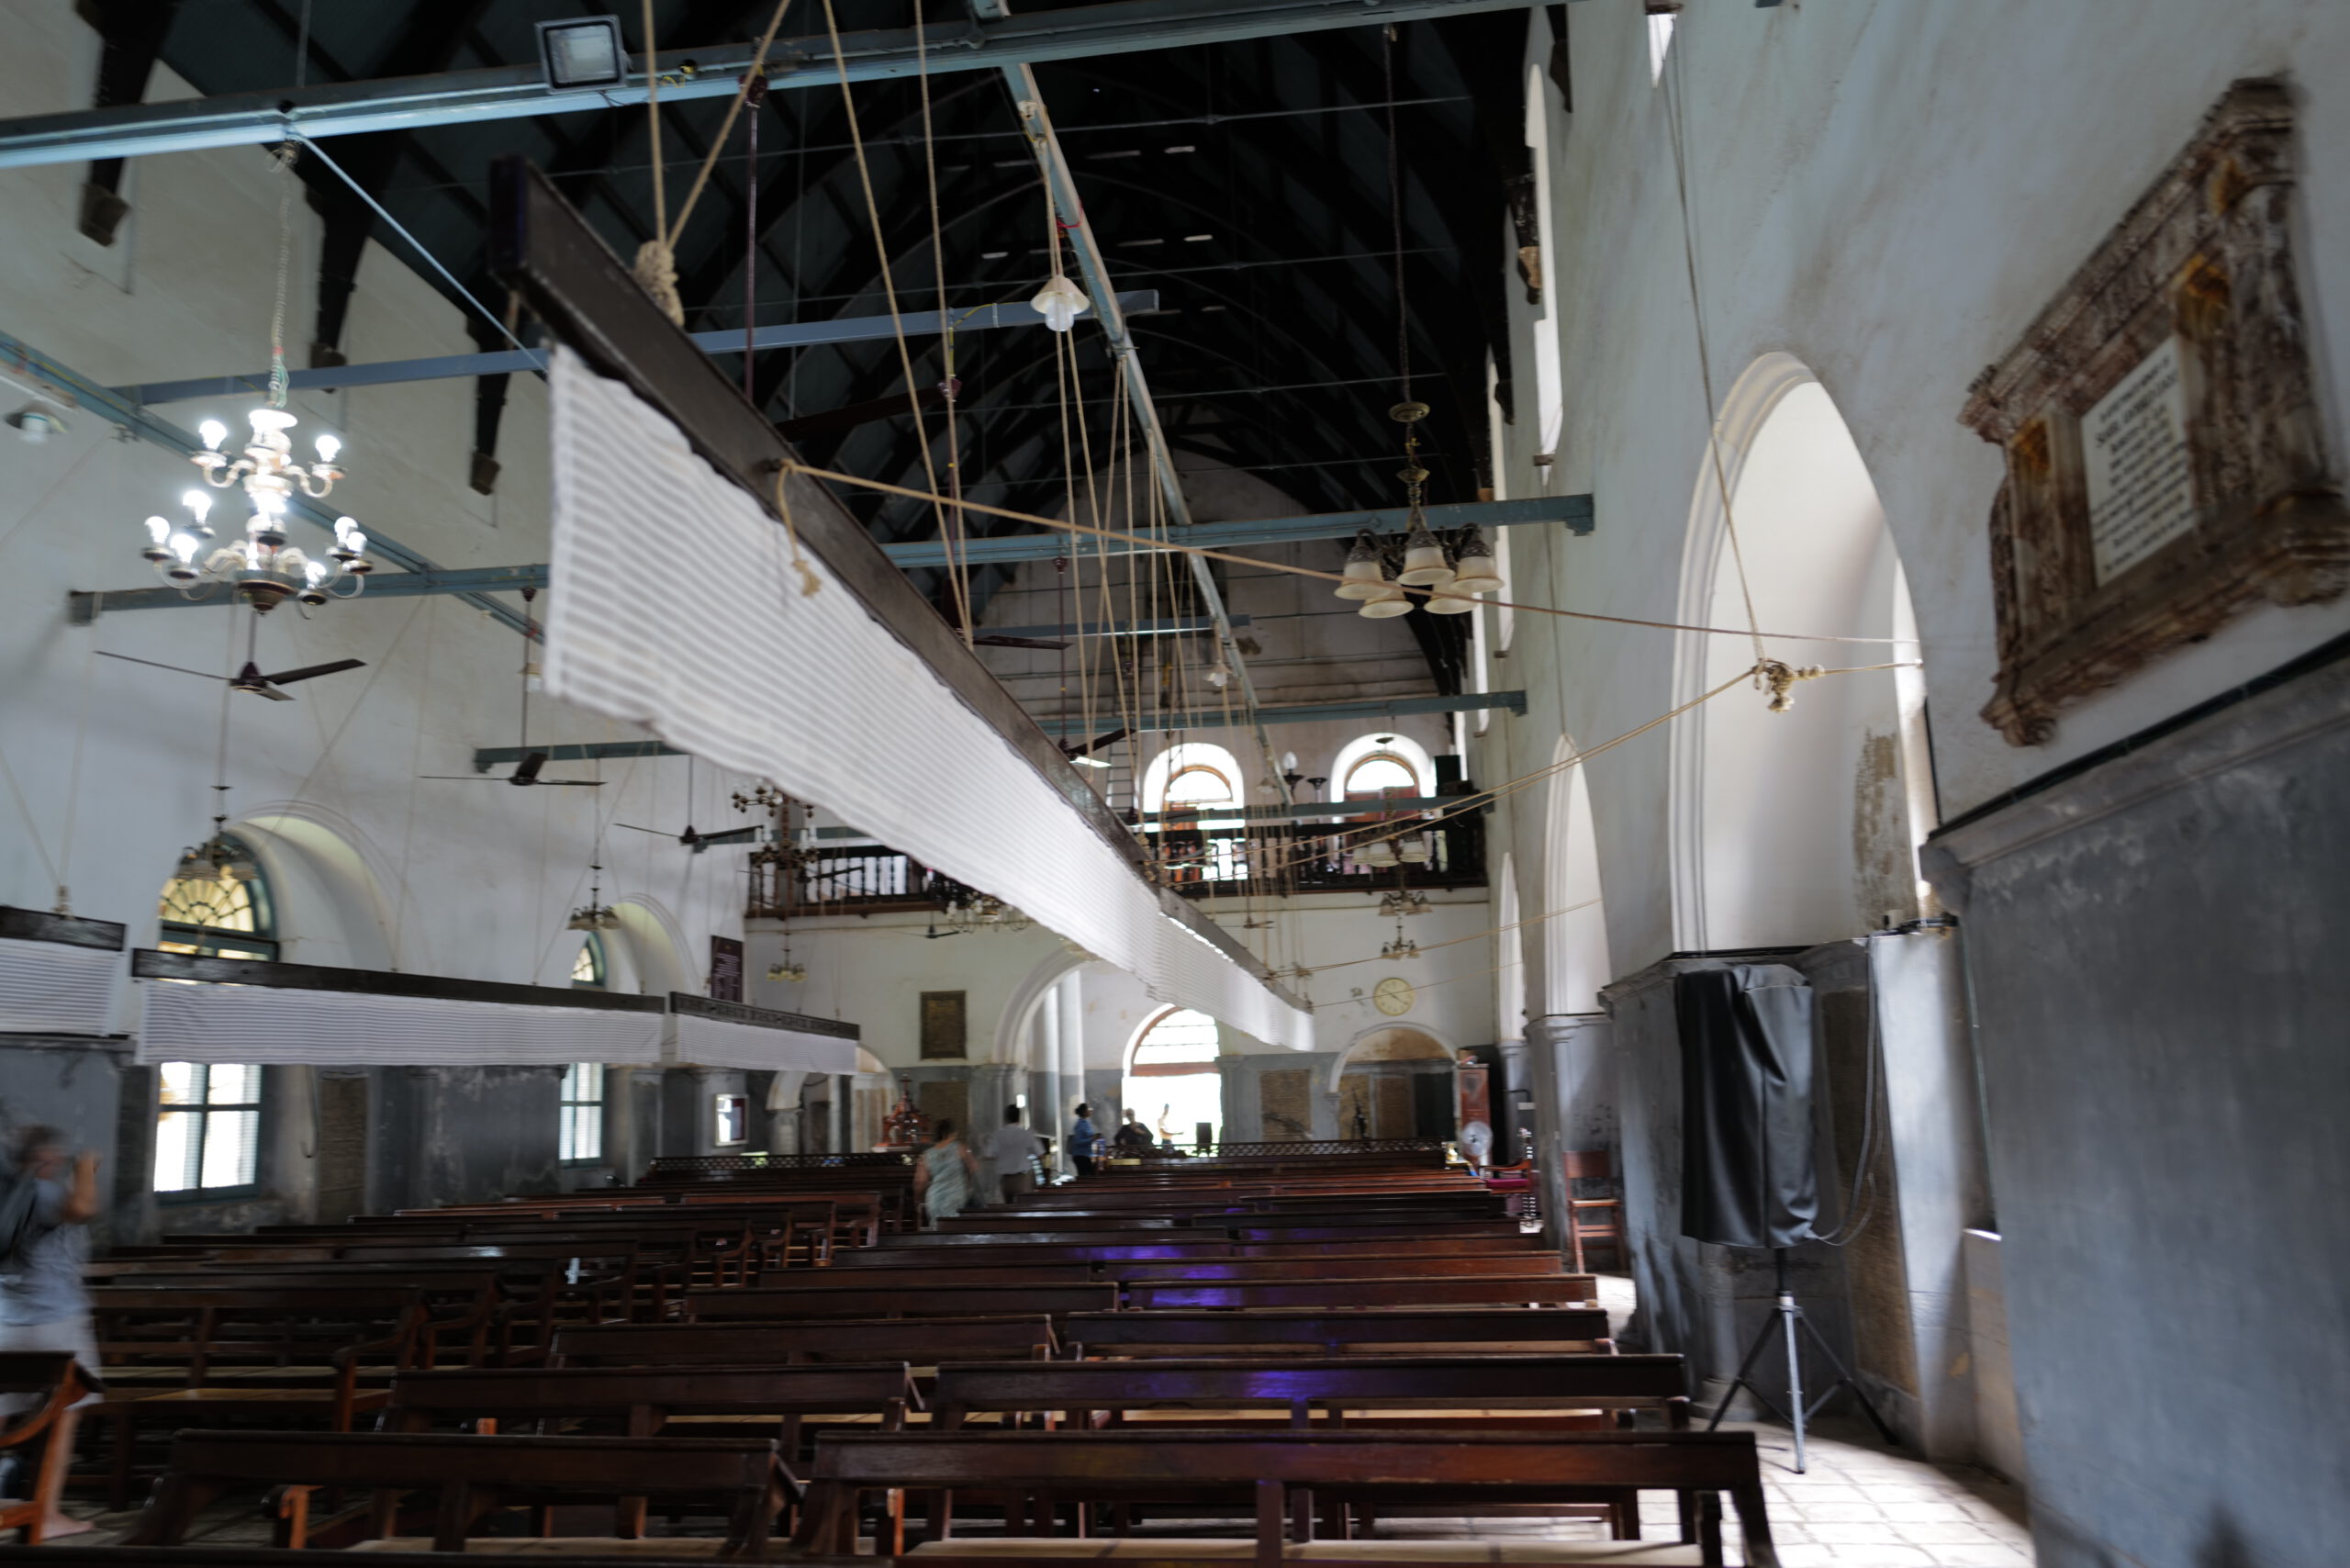 Über Seile angetriebene Luftfächer sorgen für frischen Wind in der Kirche